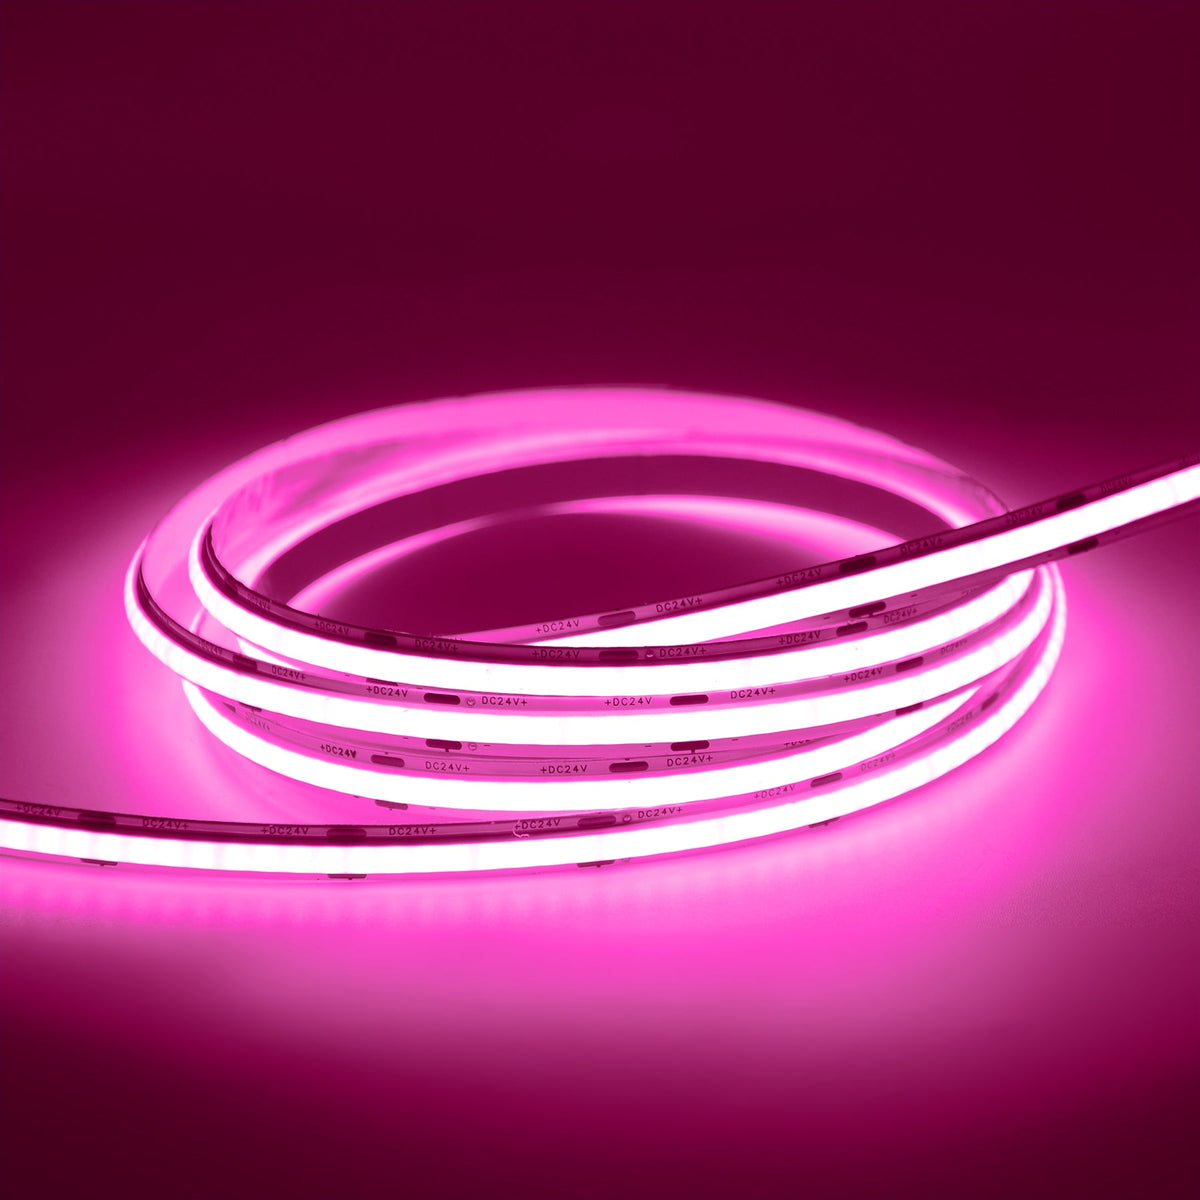 G.W.S LED Wholesale LED Strip Lights Strip Only / 5M / Pink LED COB Strip Light, Seamless, 5M Reel, IP20, 24V, 8mm Wide